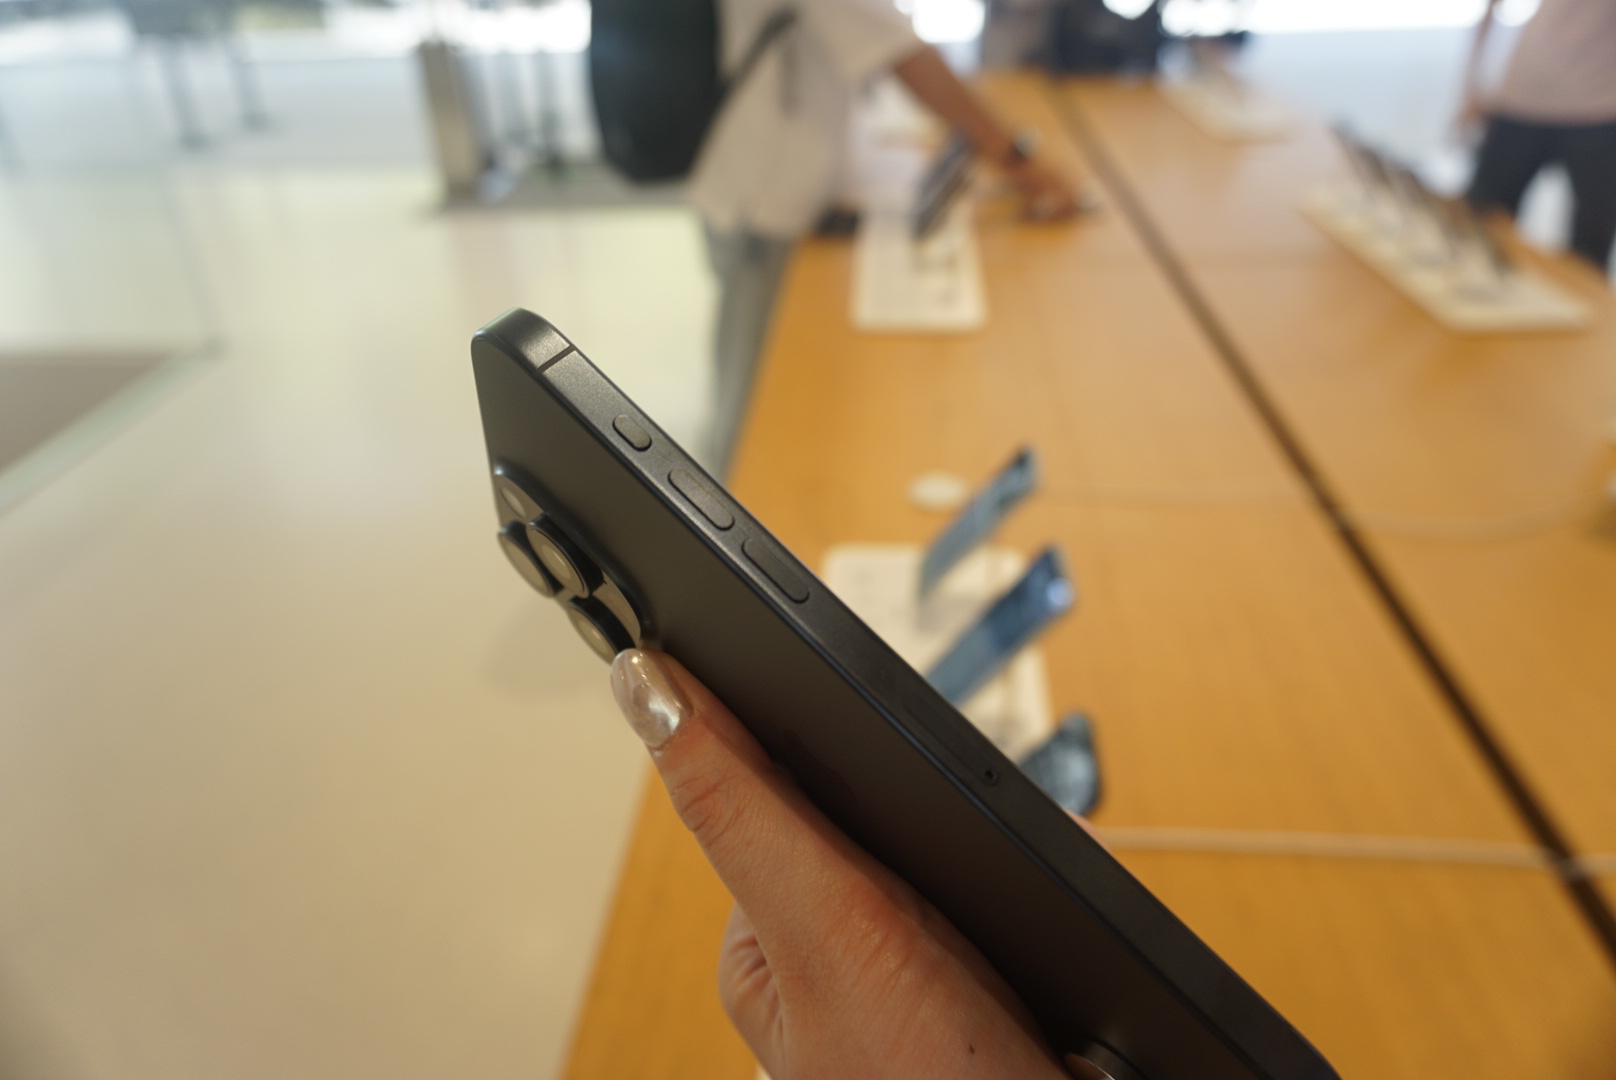  iPhone 15 Pro 最吸睛的亮點之一就是邊框採用航太等級鈦金屬設計了！使用鈦金屬材質除了更加堅固之外，重量也減輕許多，而側邊邊框的「髮絲紋」質感也很有工藝之美。